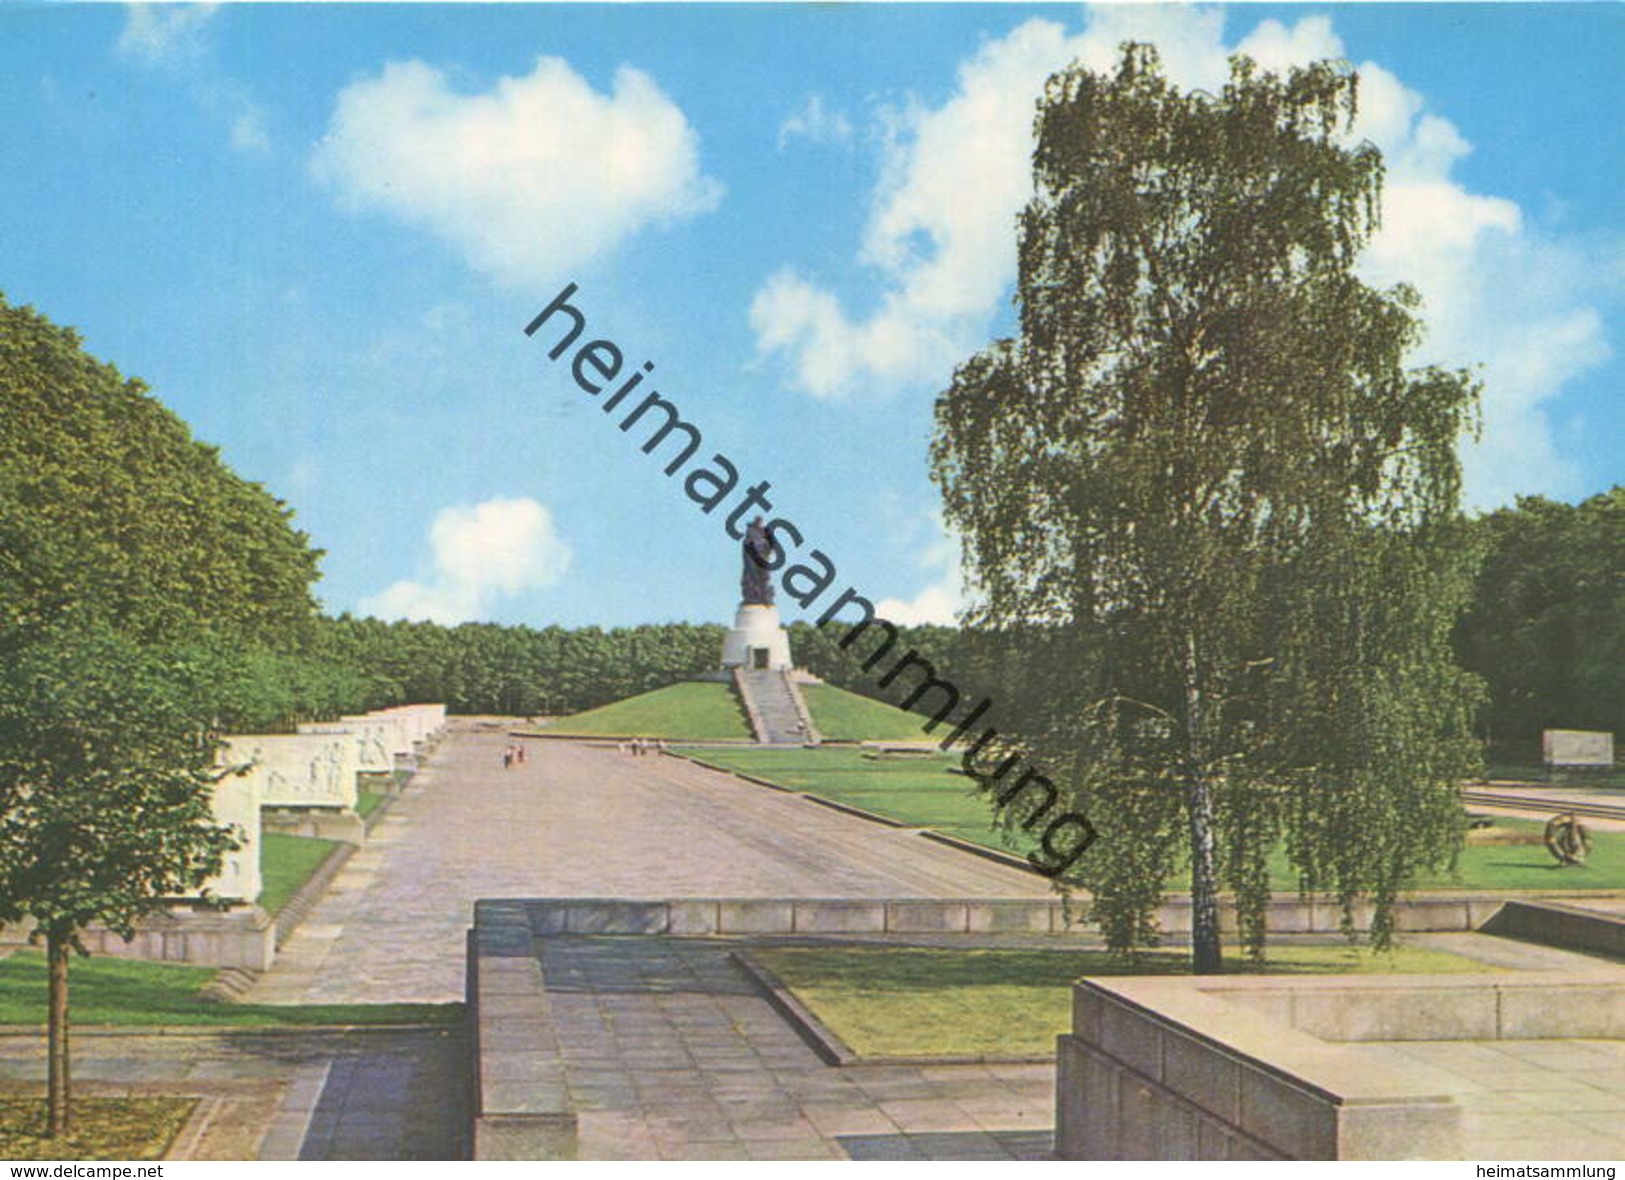 Berlin - Treptow - Sowjetisches Ehrenmal - Ansichtskarte Großformat 1973 - Verlag VEB Bild Und Heimat Reichenbach - Treptow